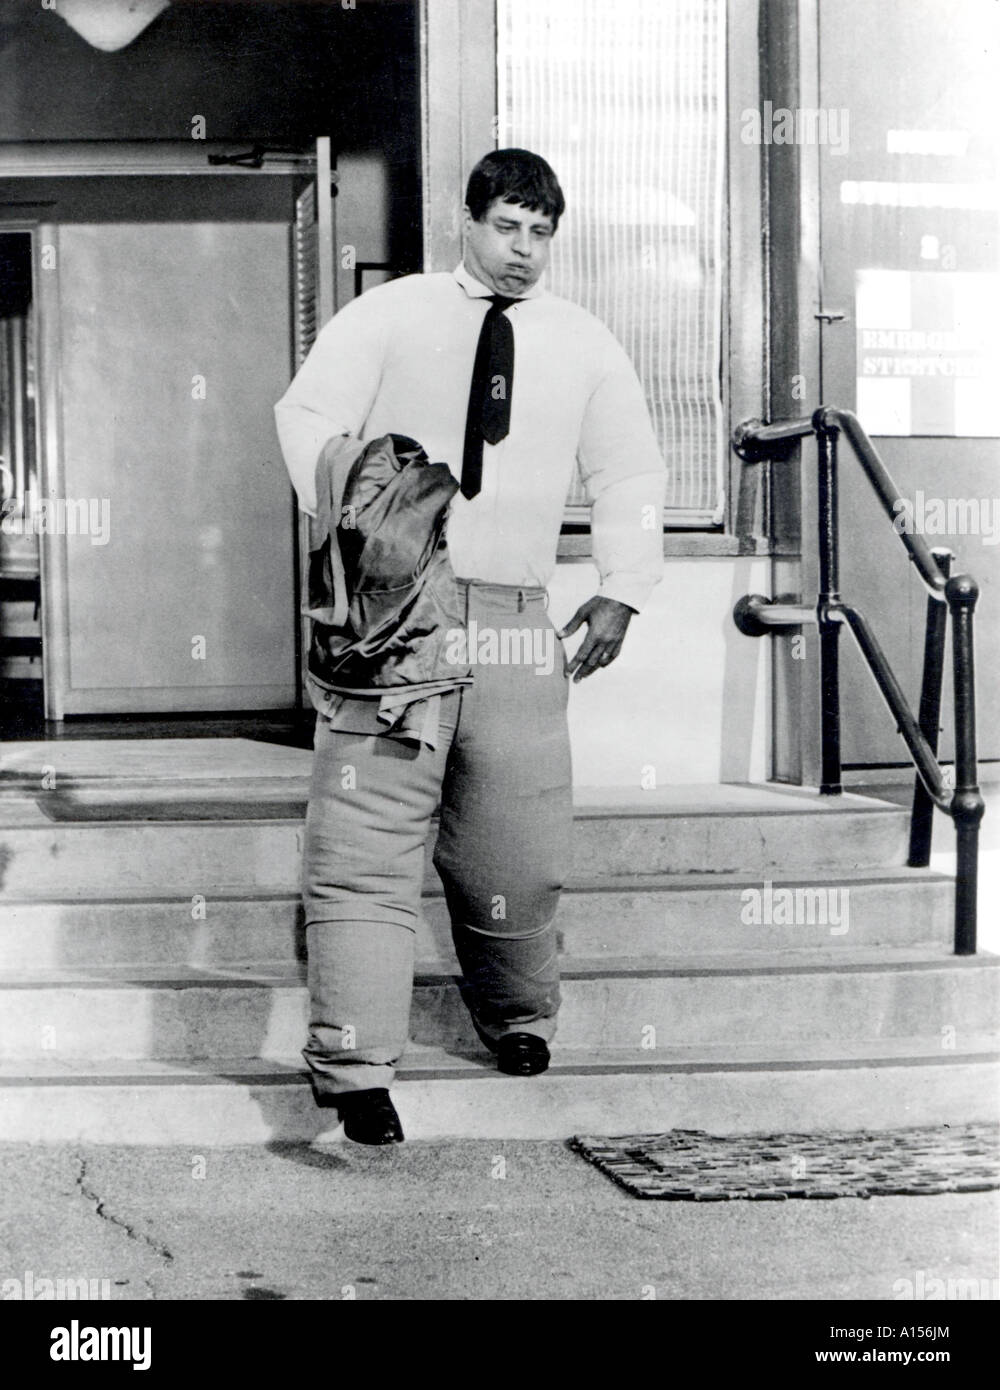 Le garçon de course Année 1961 Réalisateur Jerry Lewis Jerry Lewis Banque D'Images